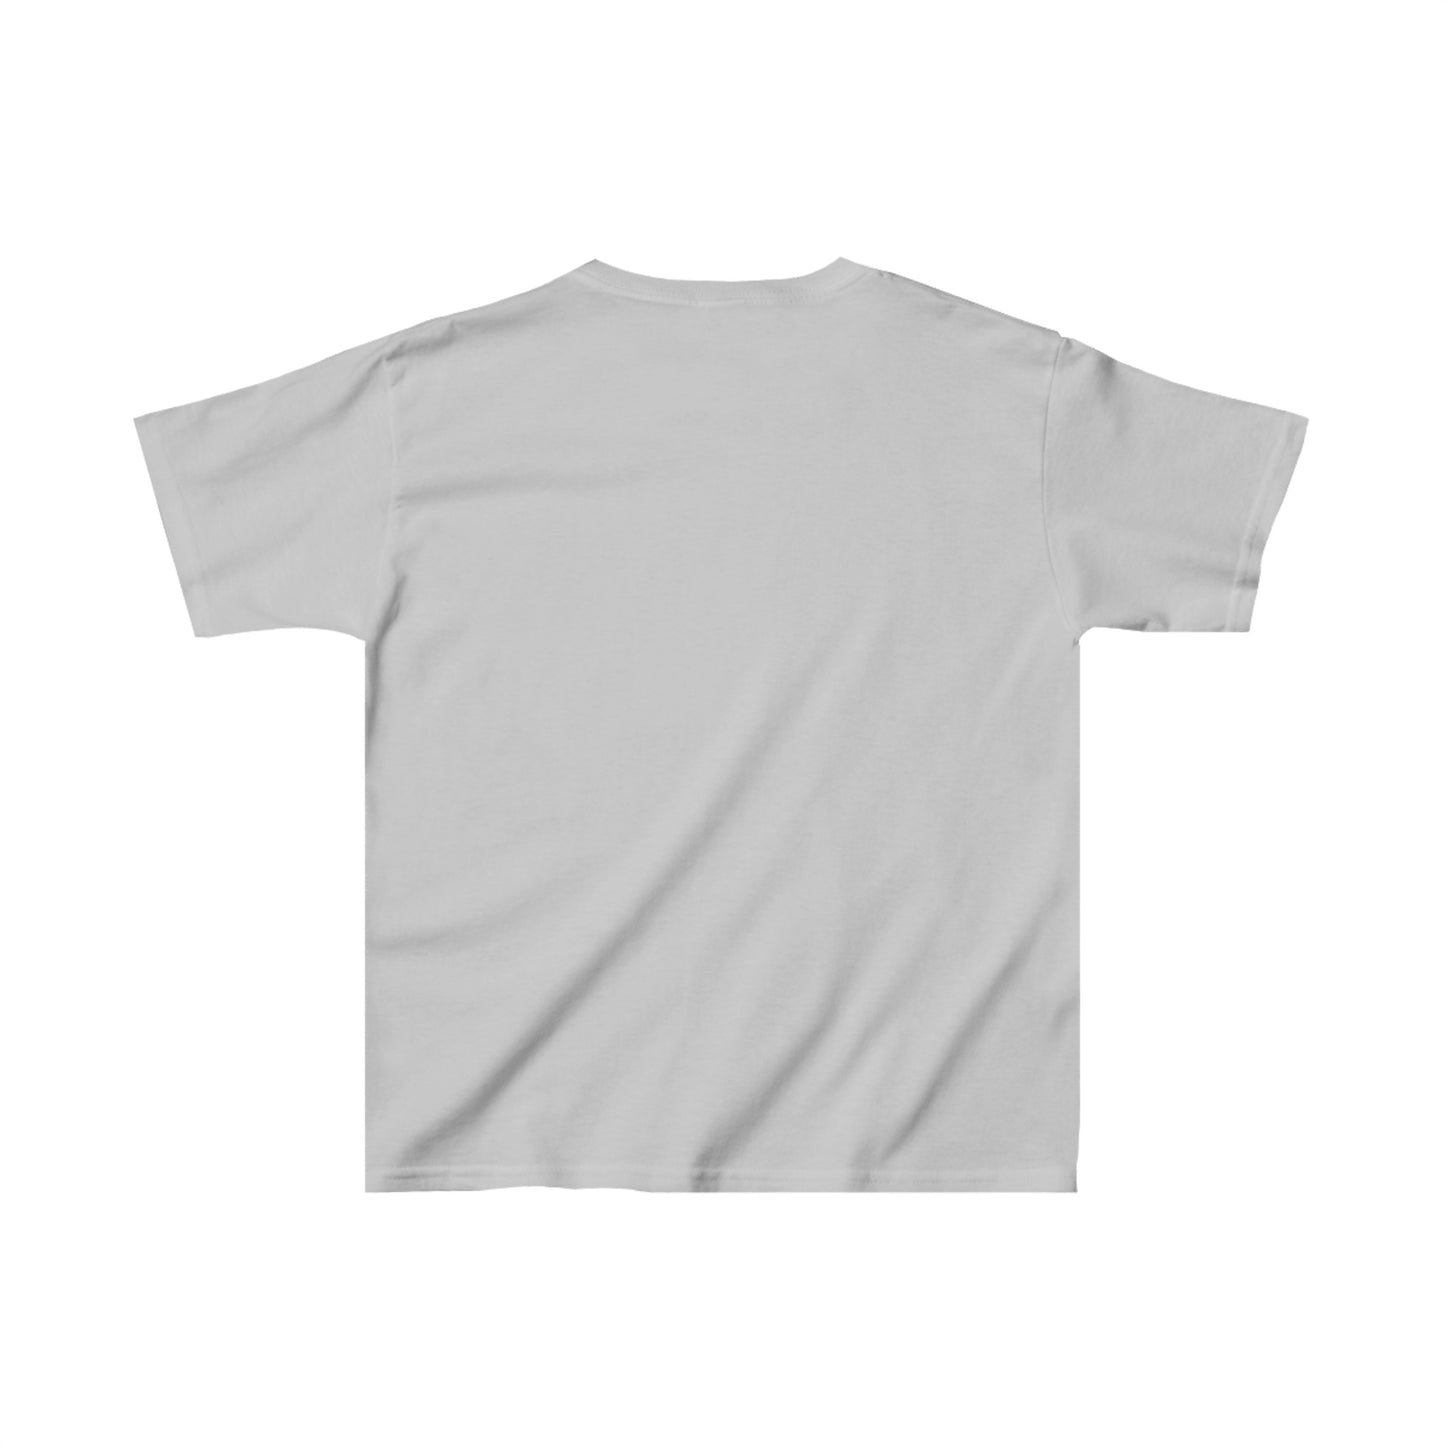 Kobe Bryant Youth T-Shirt